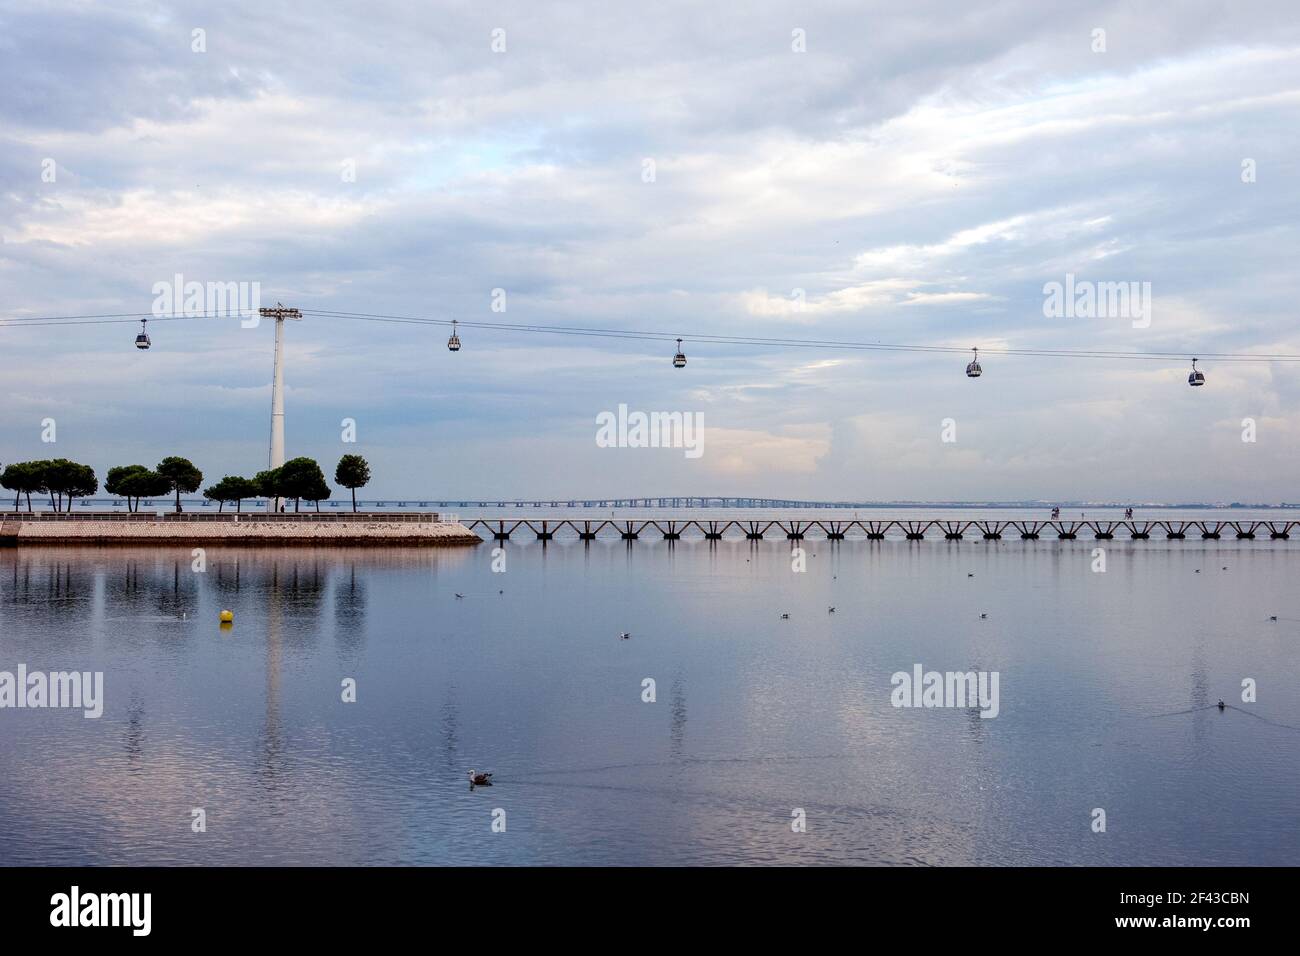 Die Seilbahnen, die über den Tejo Fluss im Parque das Naçoes in Expo fliegen, mit der Vasco de Gama Brücke im Hintergrund - Lissabon, Portugal Stockfoto